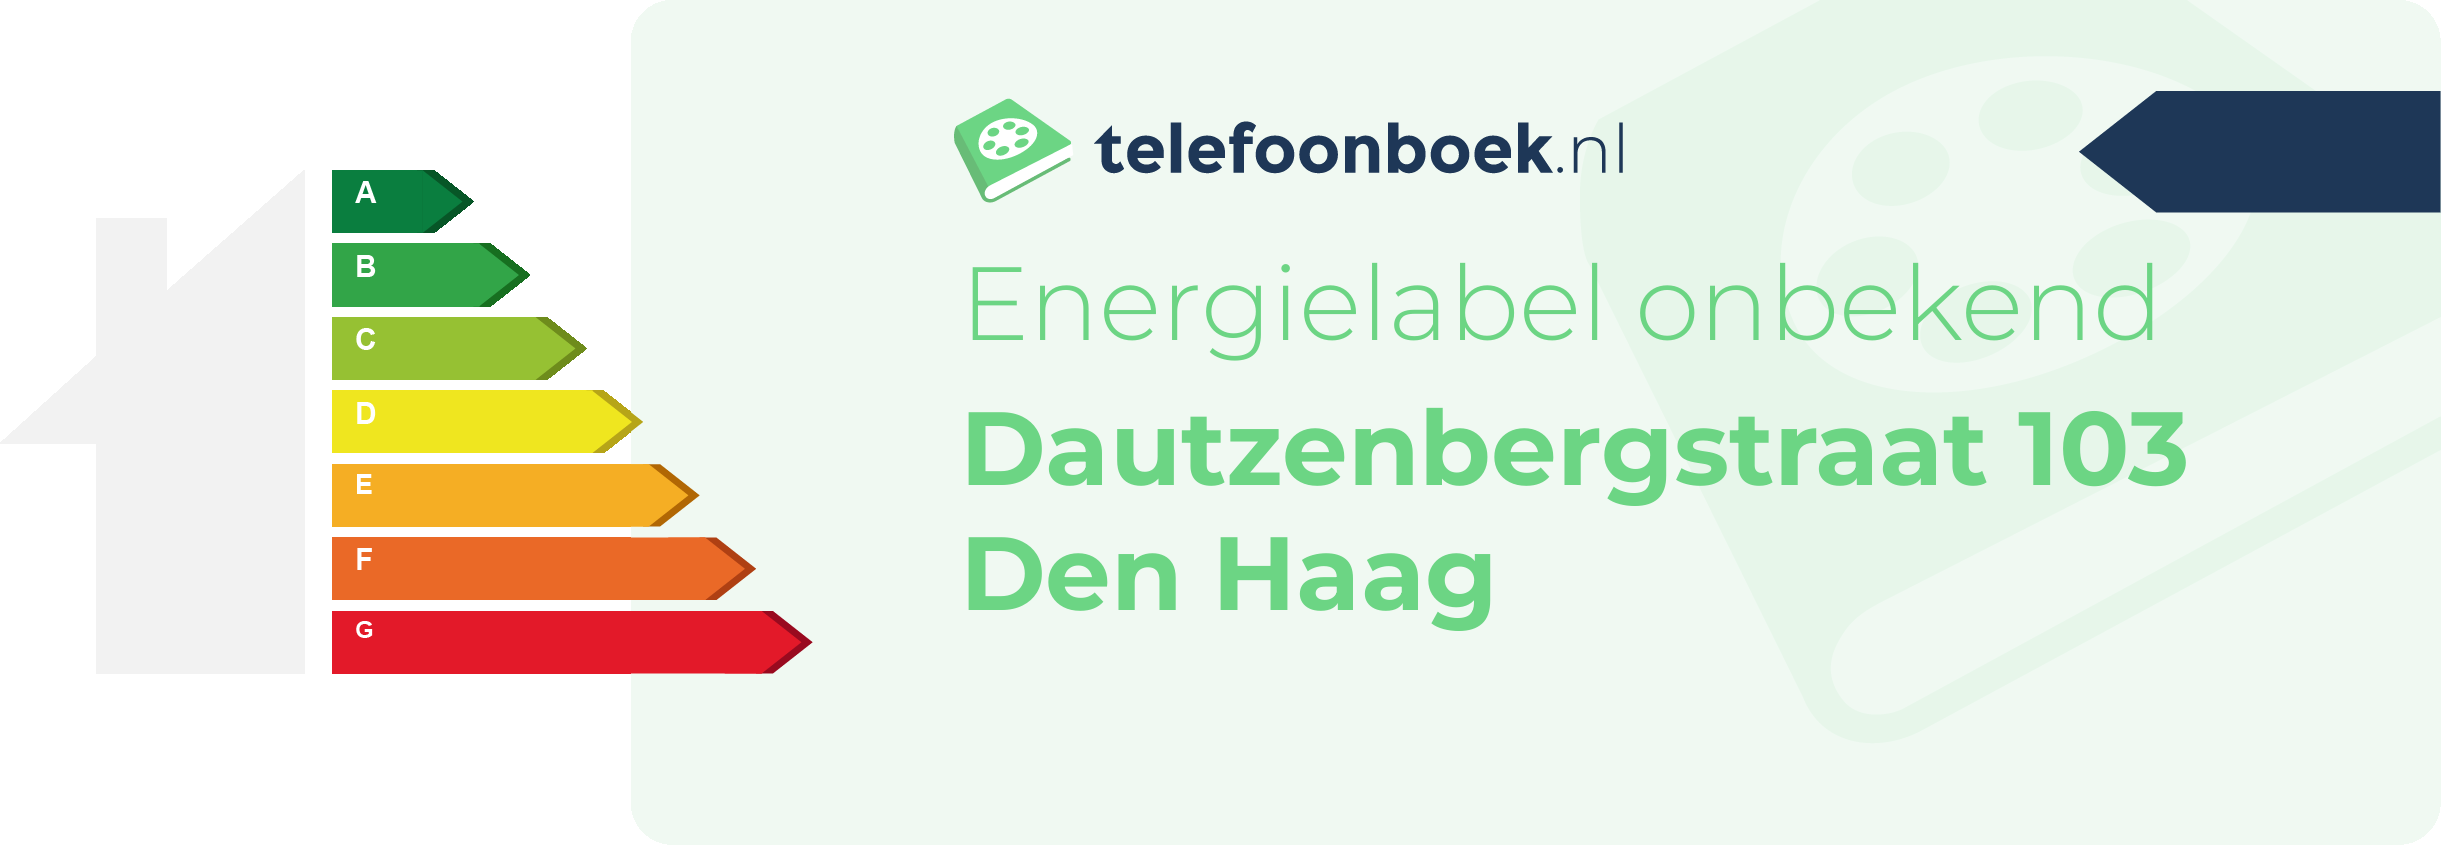 Energielabel Dautzenbergstraat 103 Den Haag